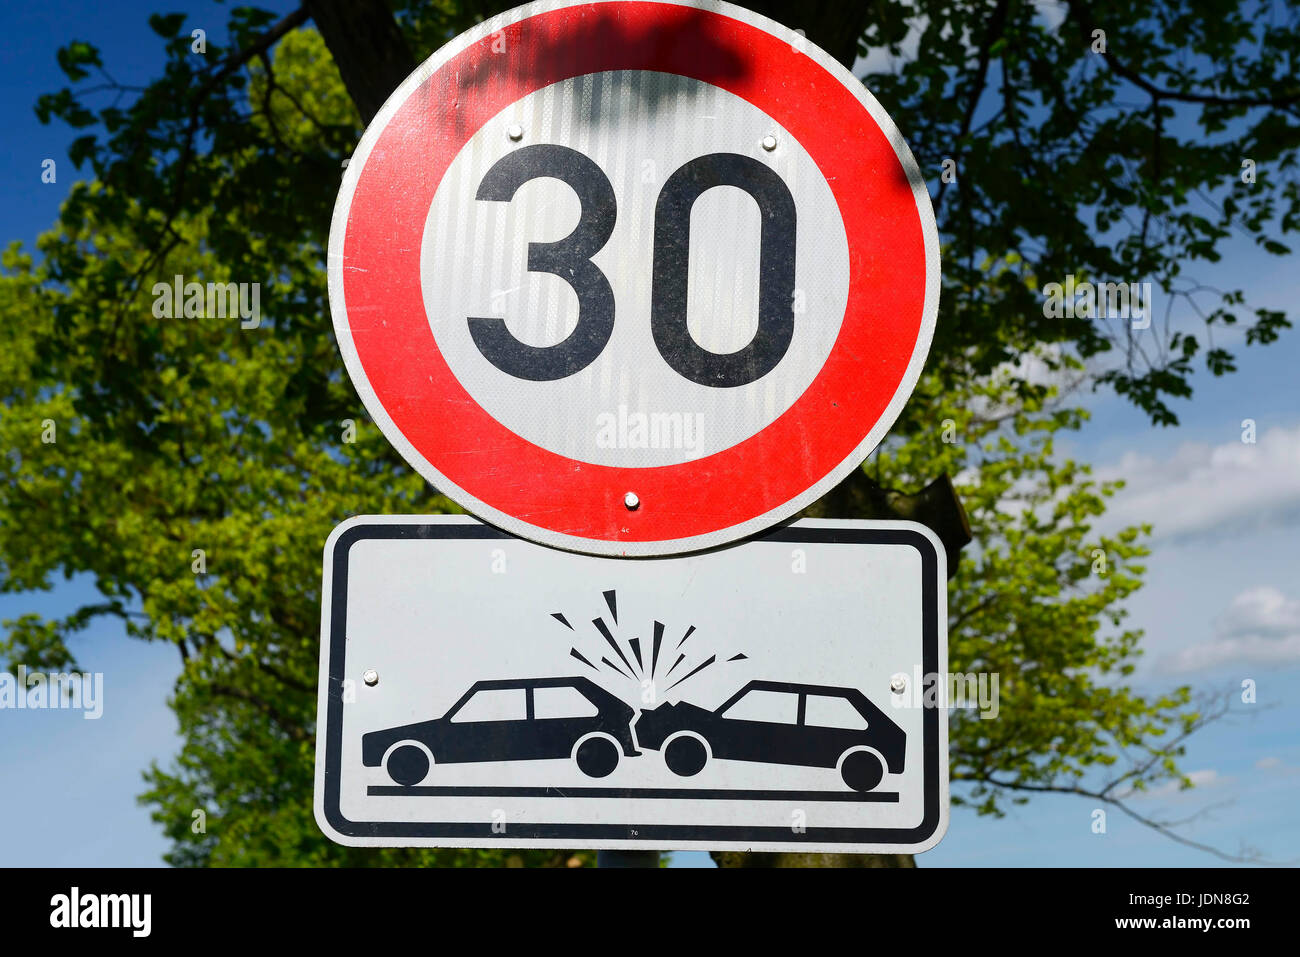 Sign Accident danger and 30 km/h of speed limitation, Schild Unfallgefahr und 30 km/h Geschwindigkeitsbegrenzung Stock Photo